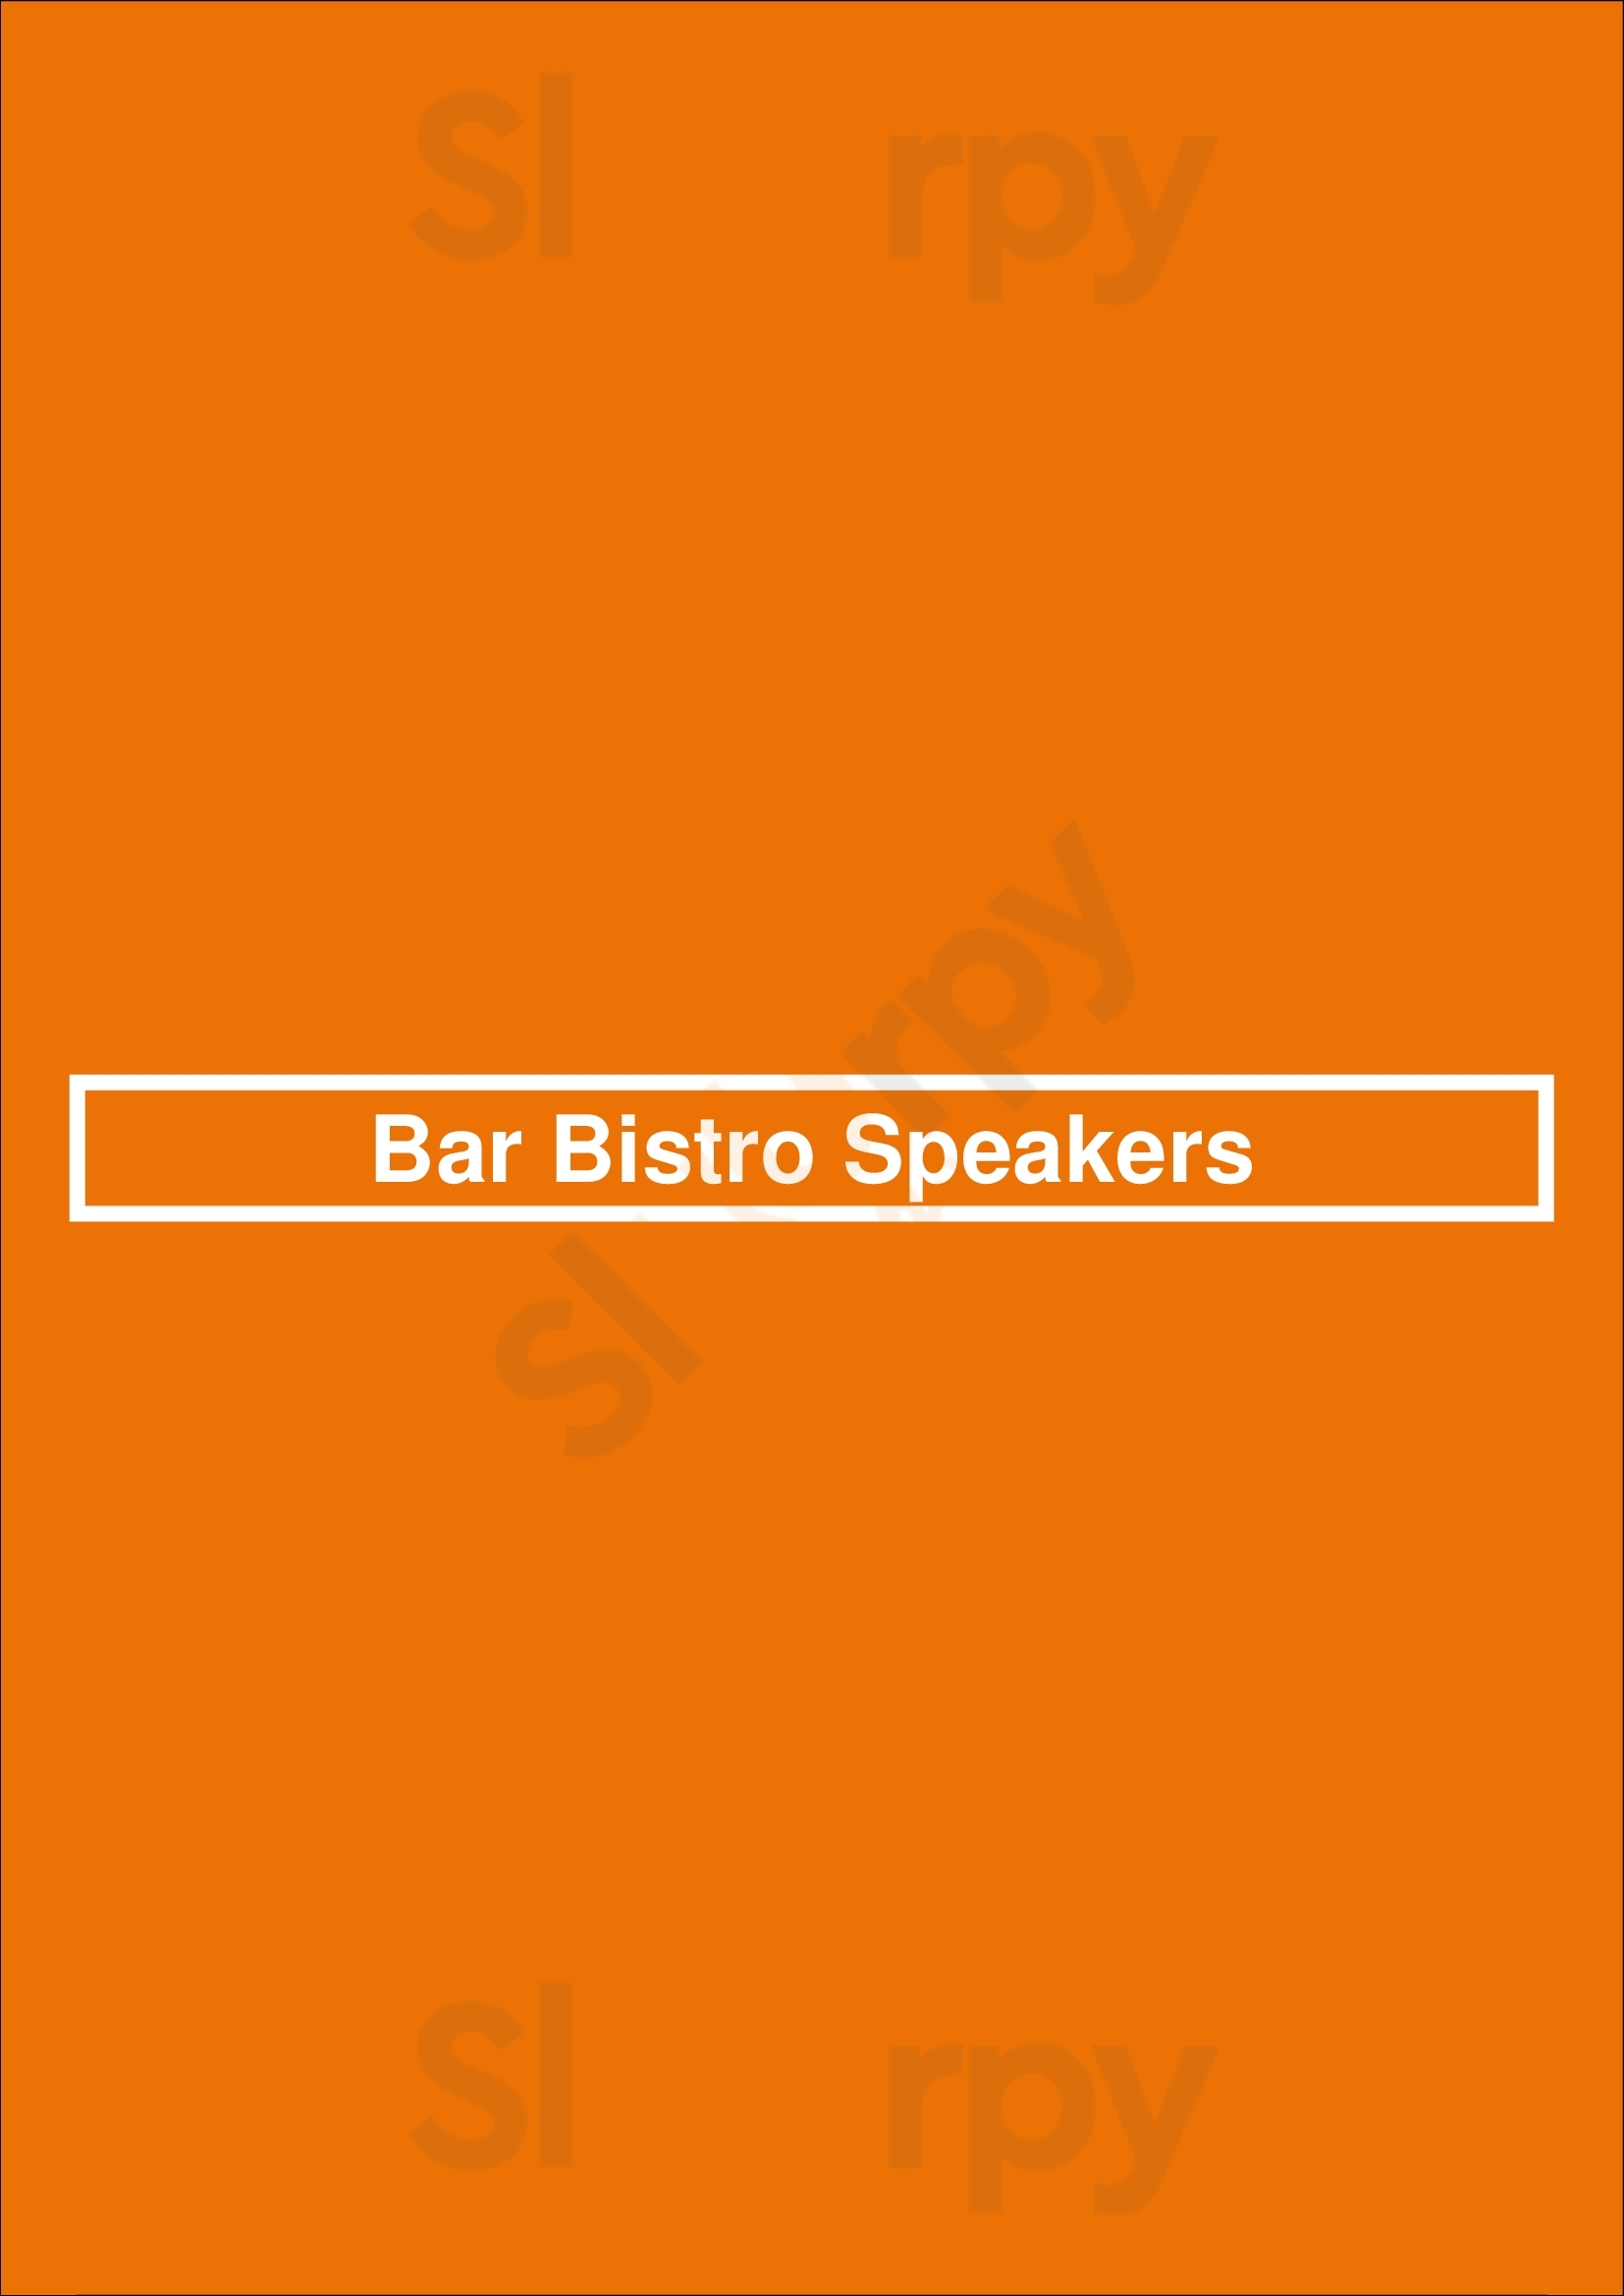 Bar Bistro Speakers Den Haag Menu - 1